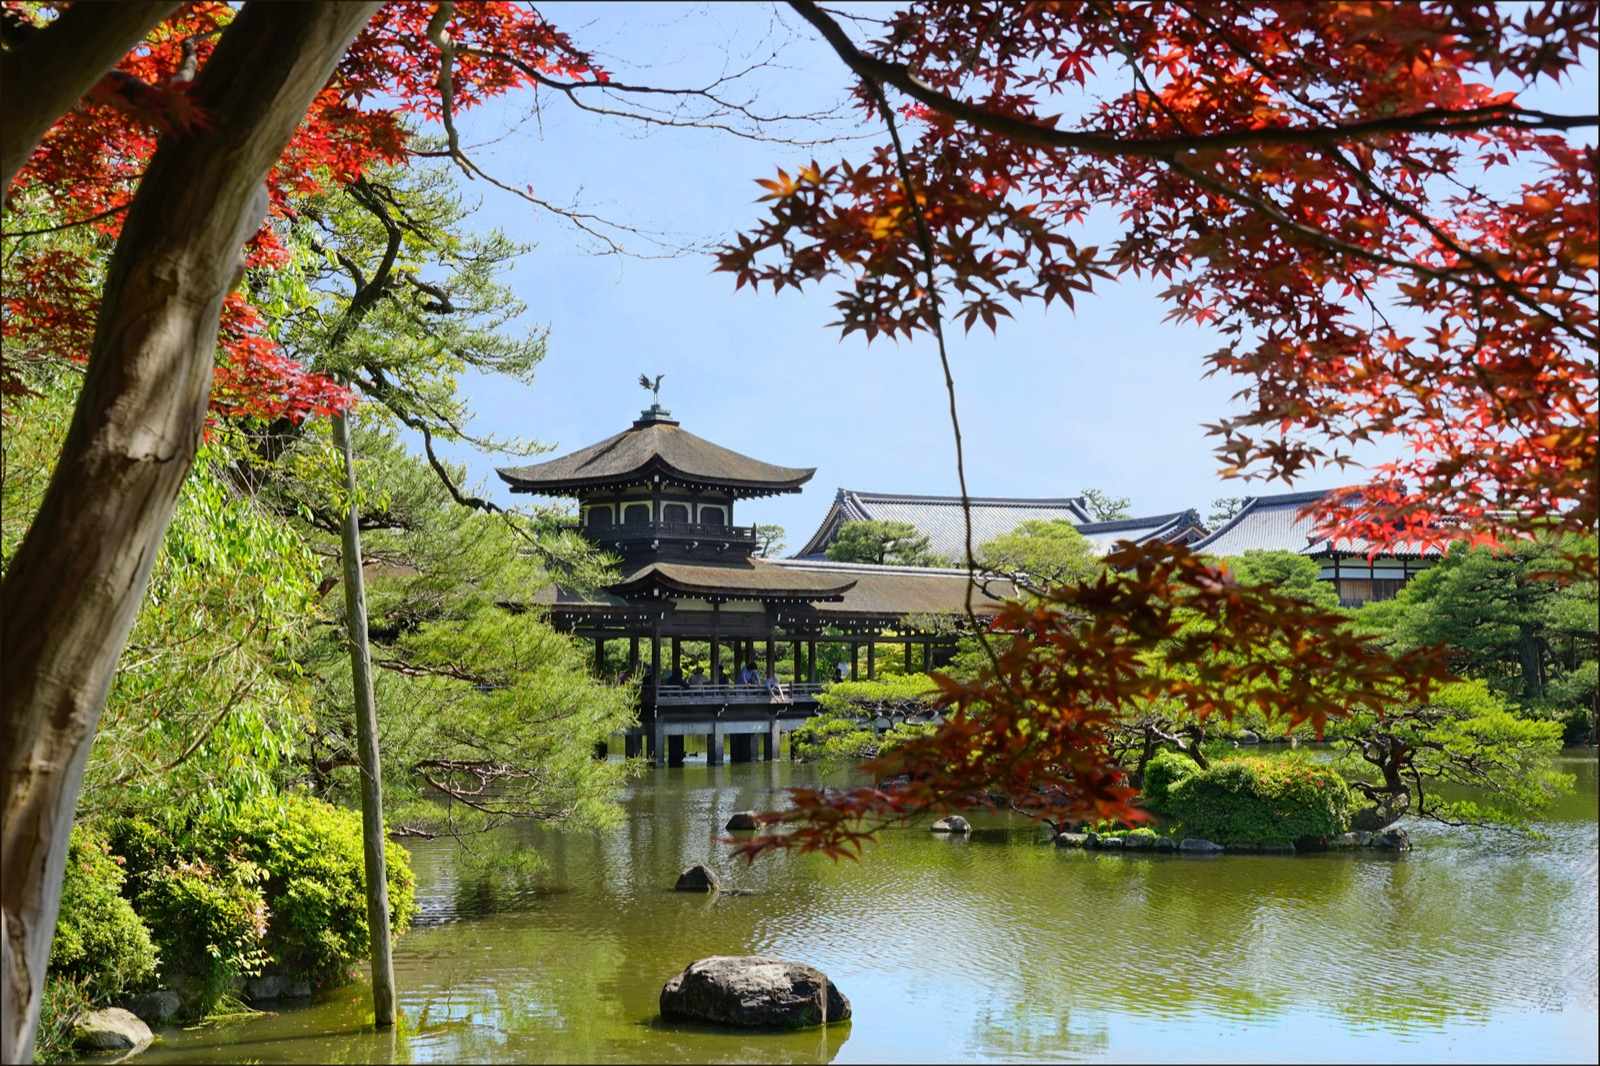 Photo of Heian Shrine Gardens, Japan (Le lac du sanctuaire shinto Heian-Jingu (Kyoto, Japon) by Jean-Pierre Dalbéra)